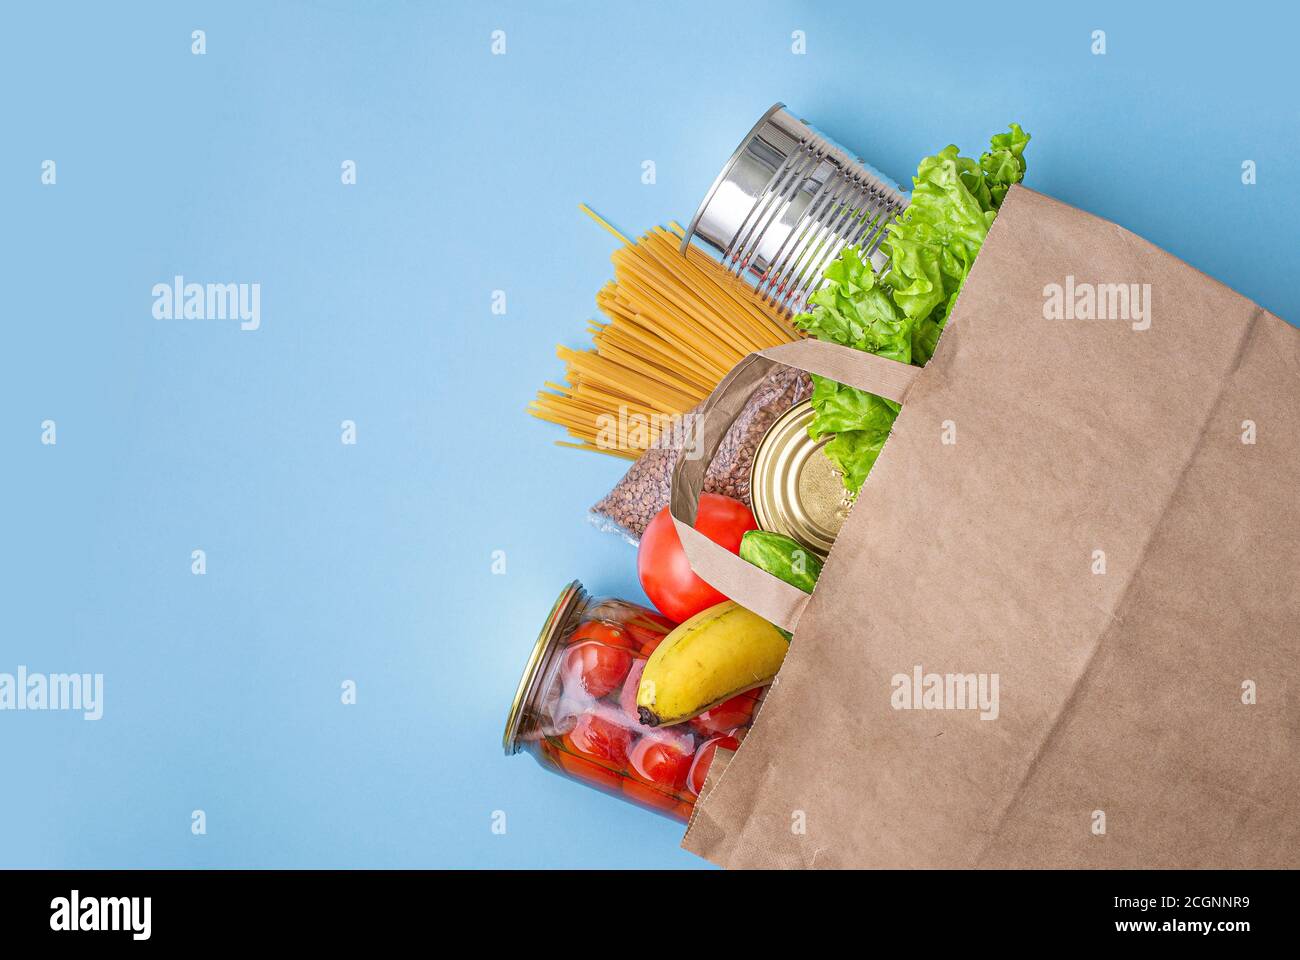 Sacchetto di carta con cibo, cibo in scatola, pomodori, cetrioli, banane su sfondo giallo. Donazione, quarantena coronavirus. Forniture alimentari per quarantena. Foto Stock